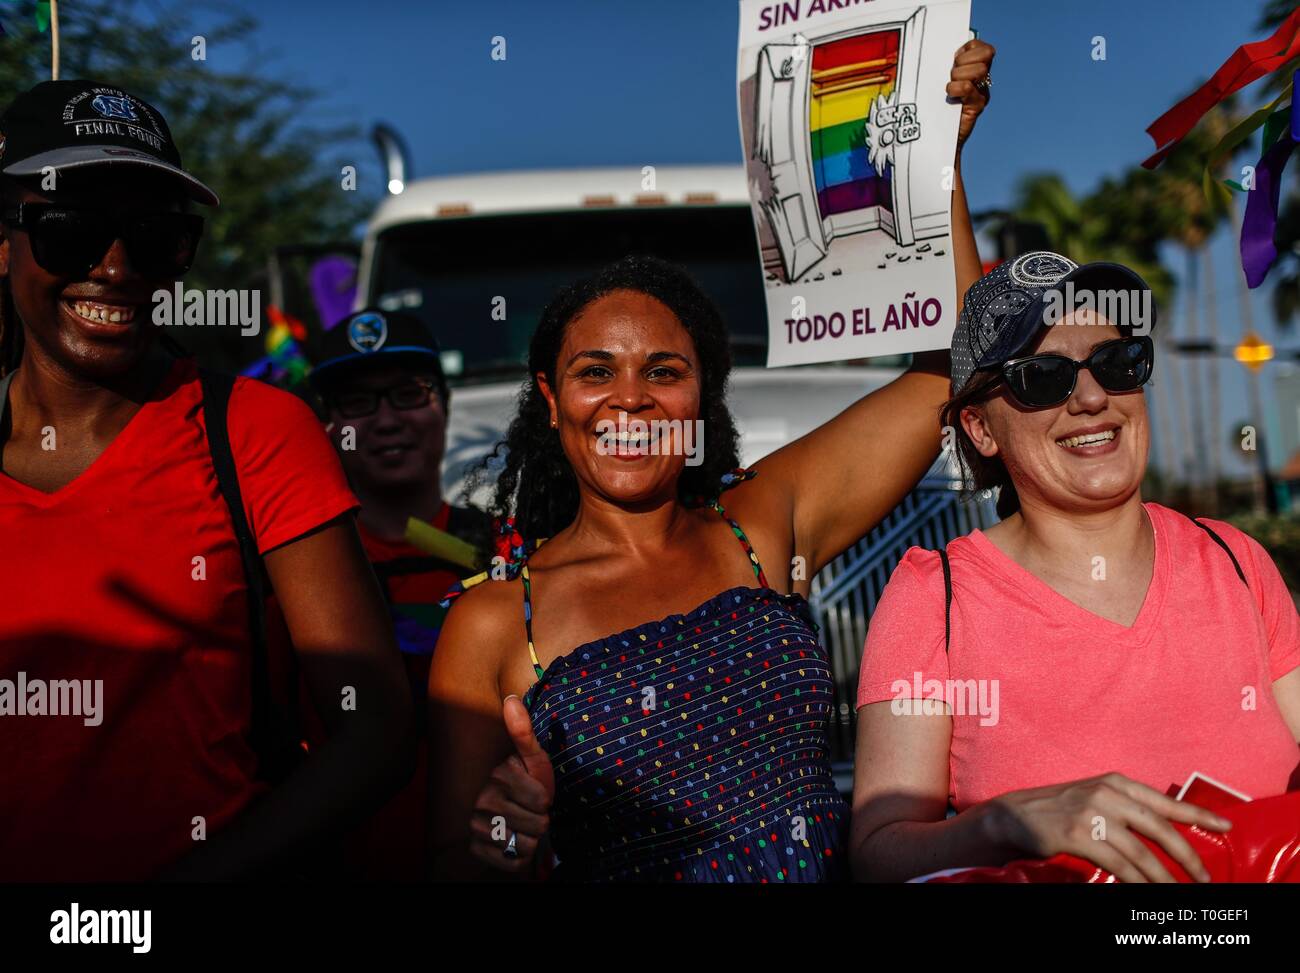 Marcha por el orgullo Gay.  Manifestación por igualdad y respeto a comunidad LGB. Lésbico, gay, bisexual y transexual (LGBT) 9 Junio 2018.  Photo: (NortePhoto / LuisGutierrez)  ... Stock Photo